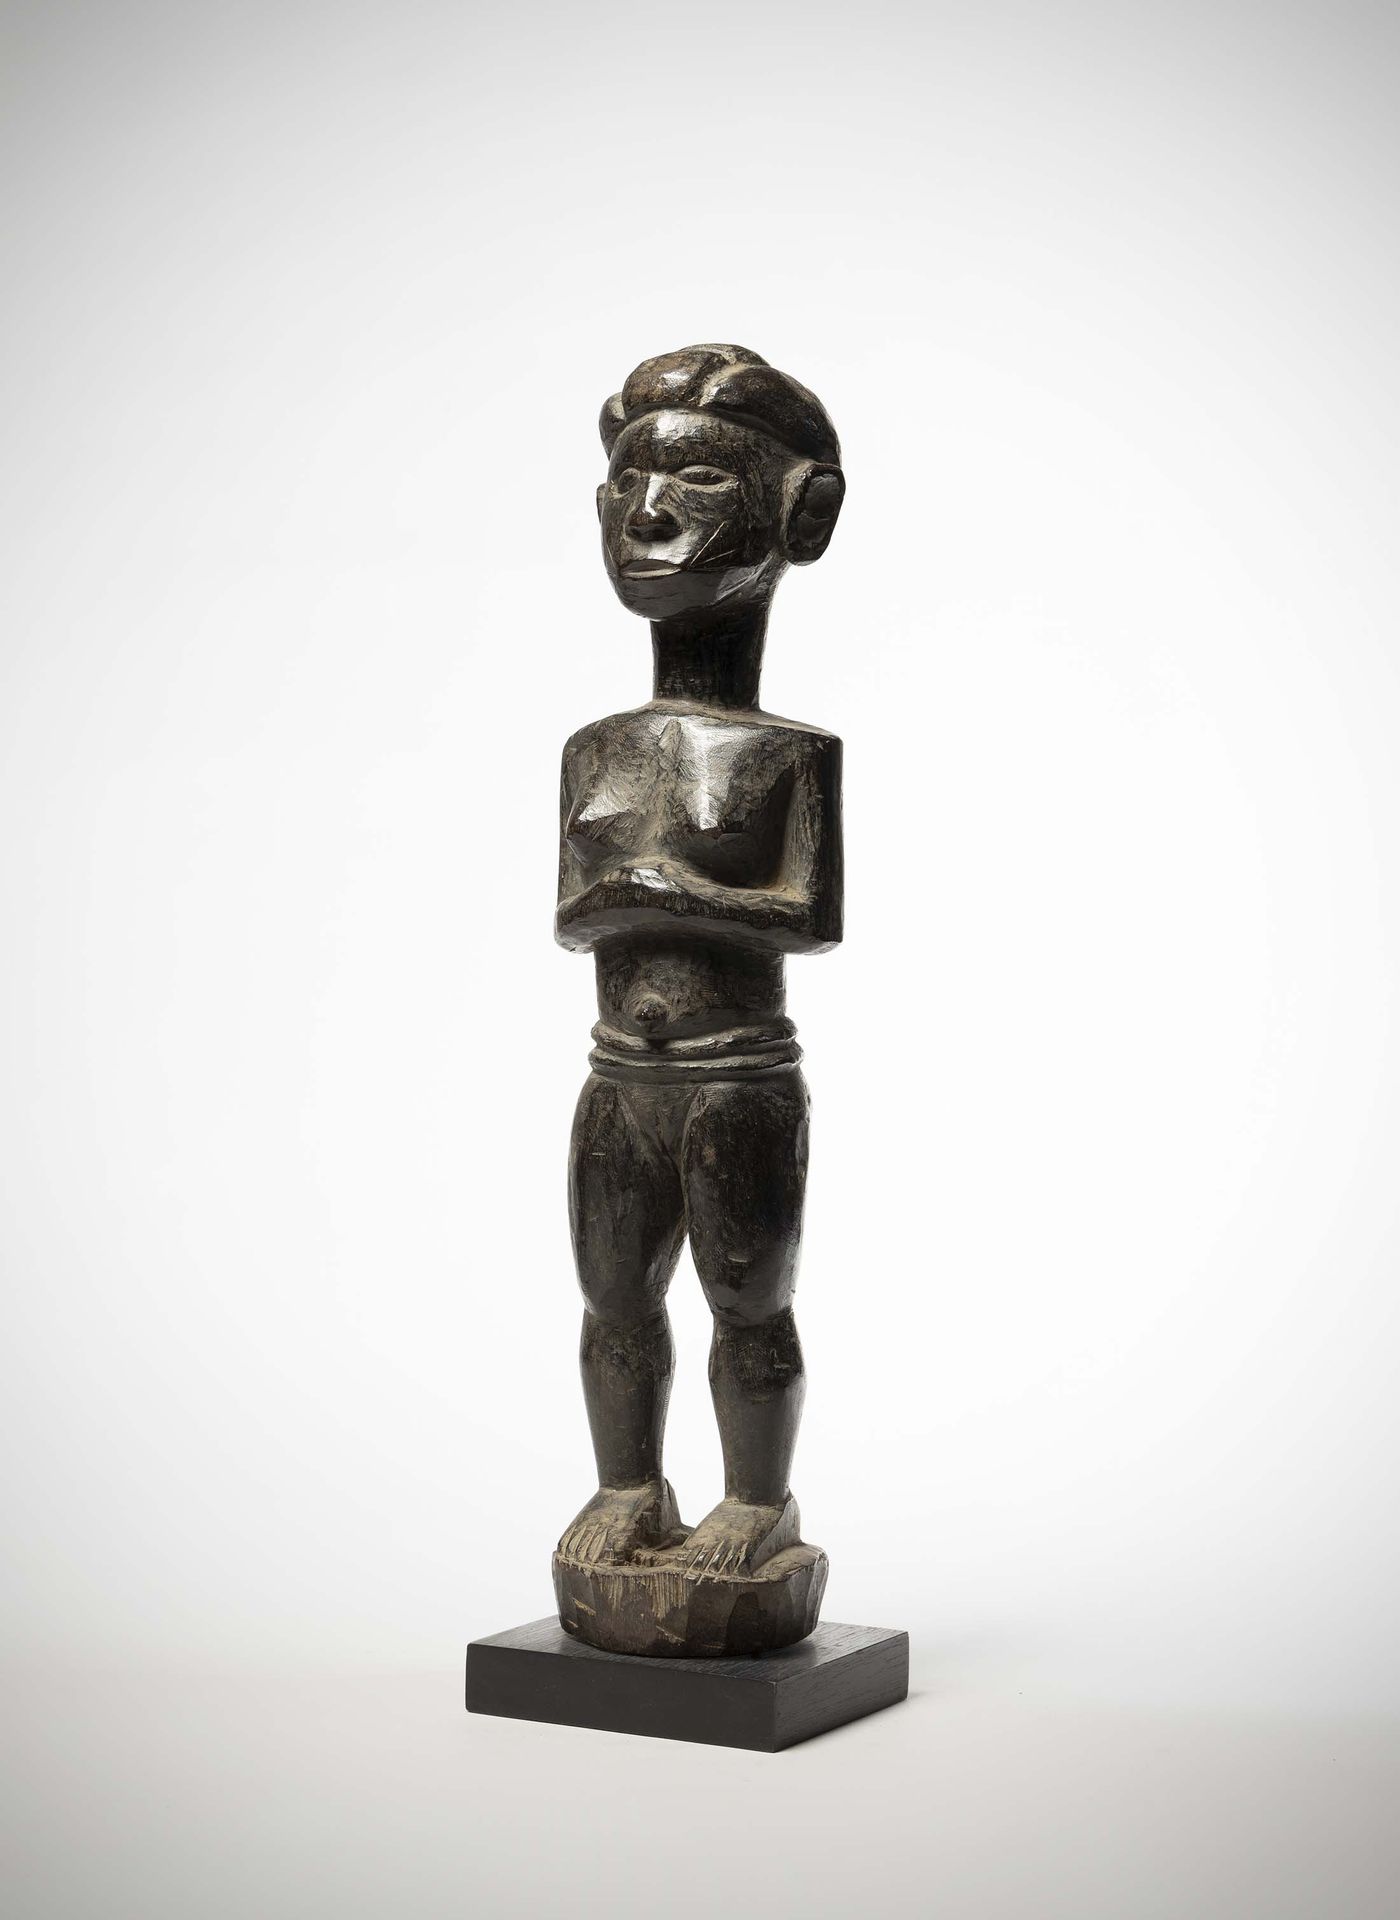 Null Tiv

(Nigeria) Weibliche Statue aus schwerem Holz mit glänzender schwarzer &hellip;